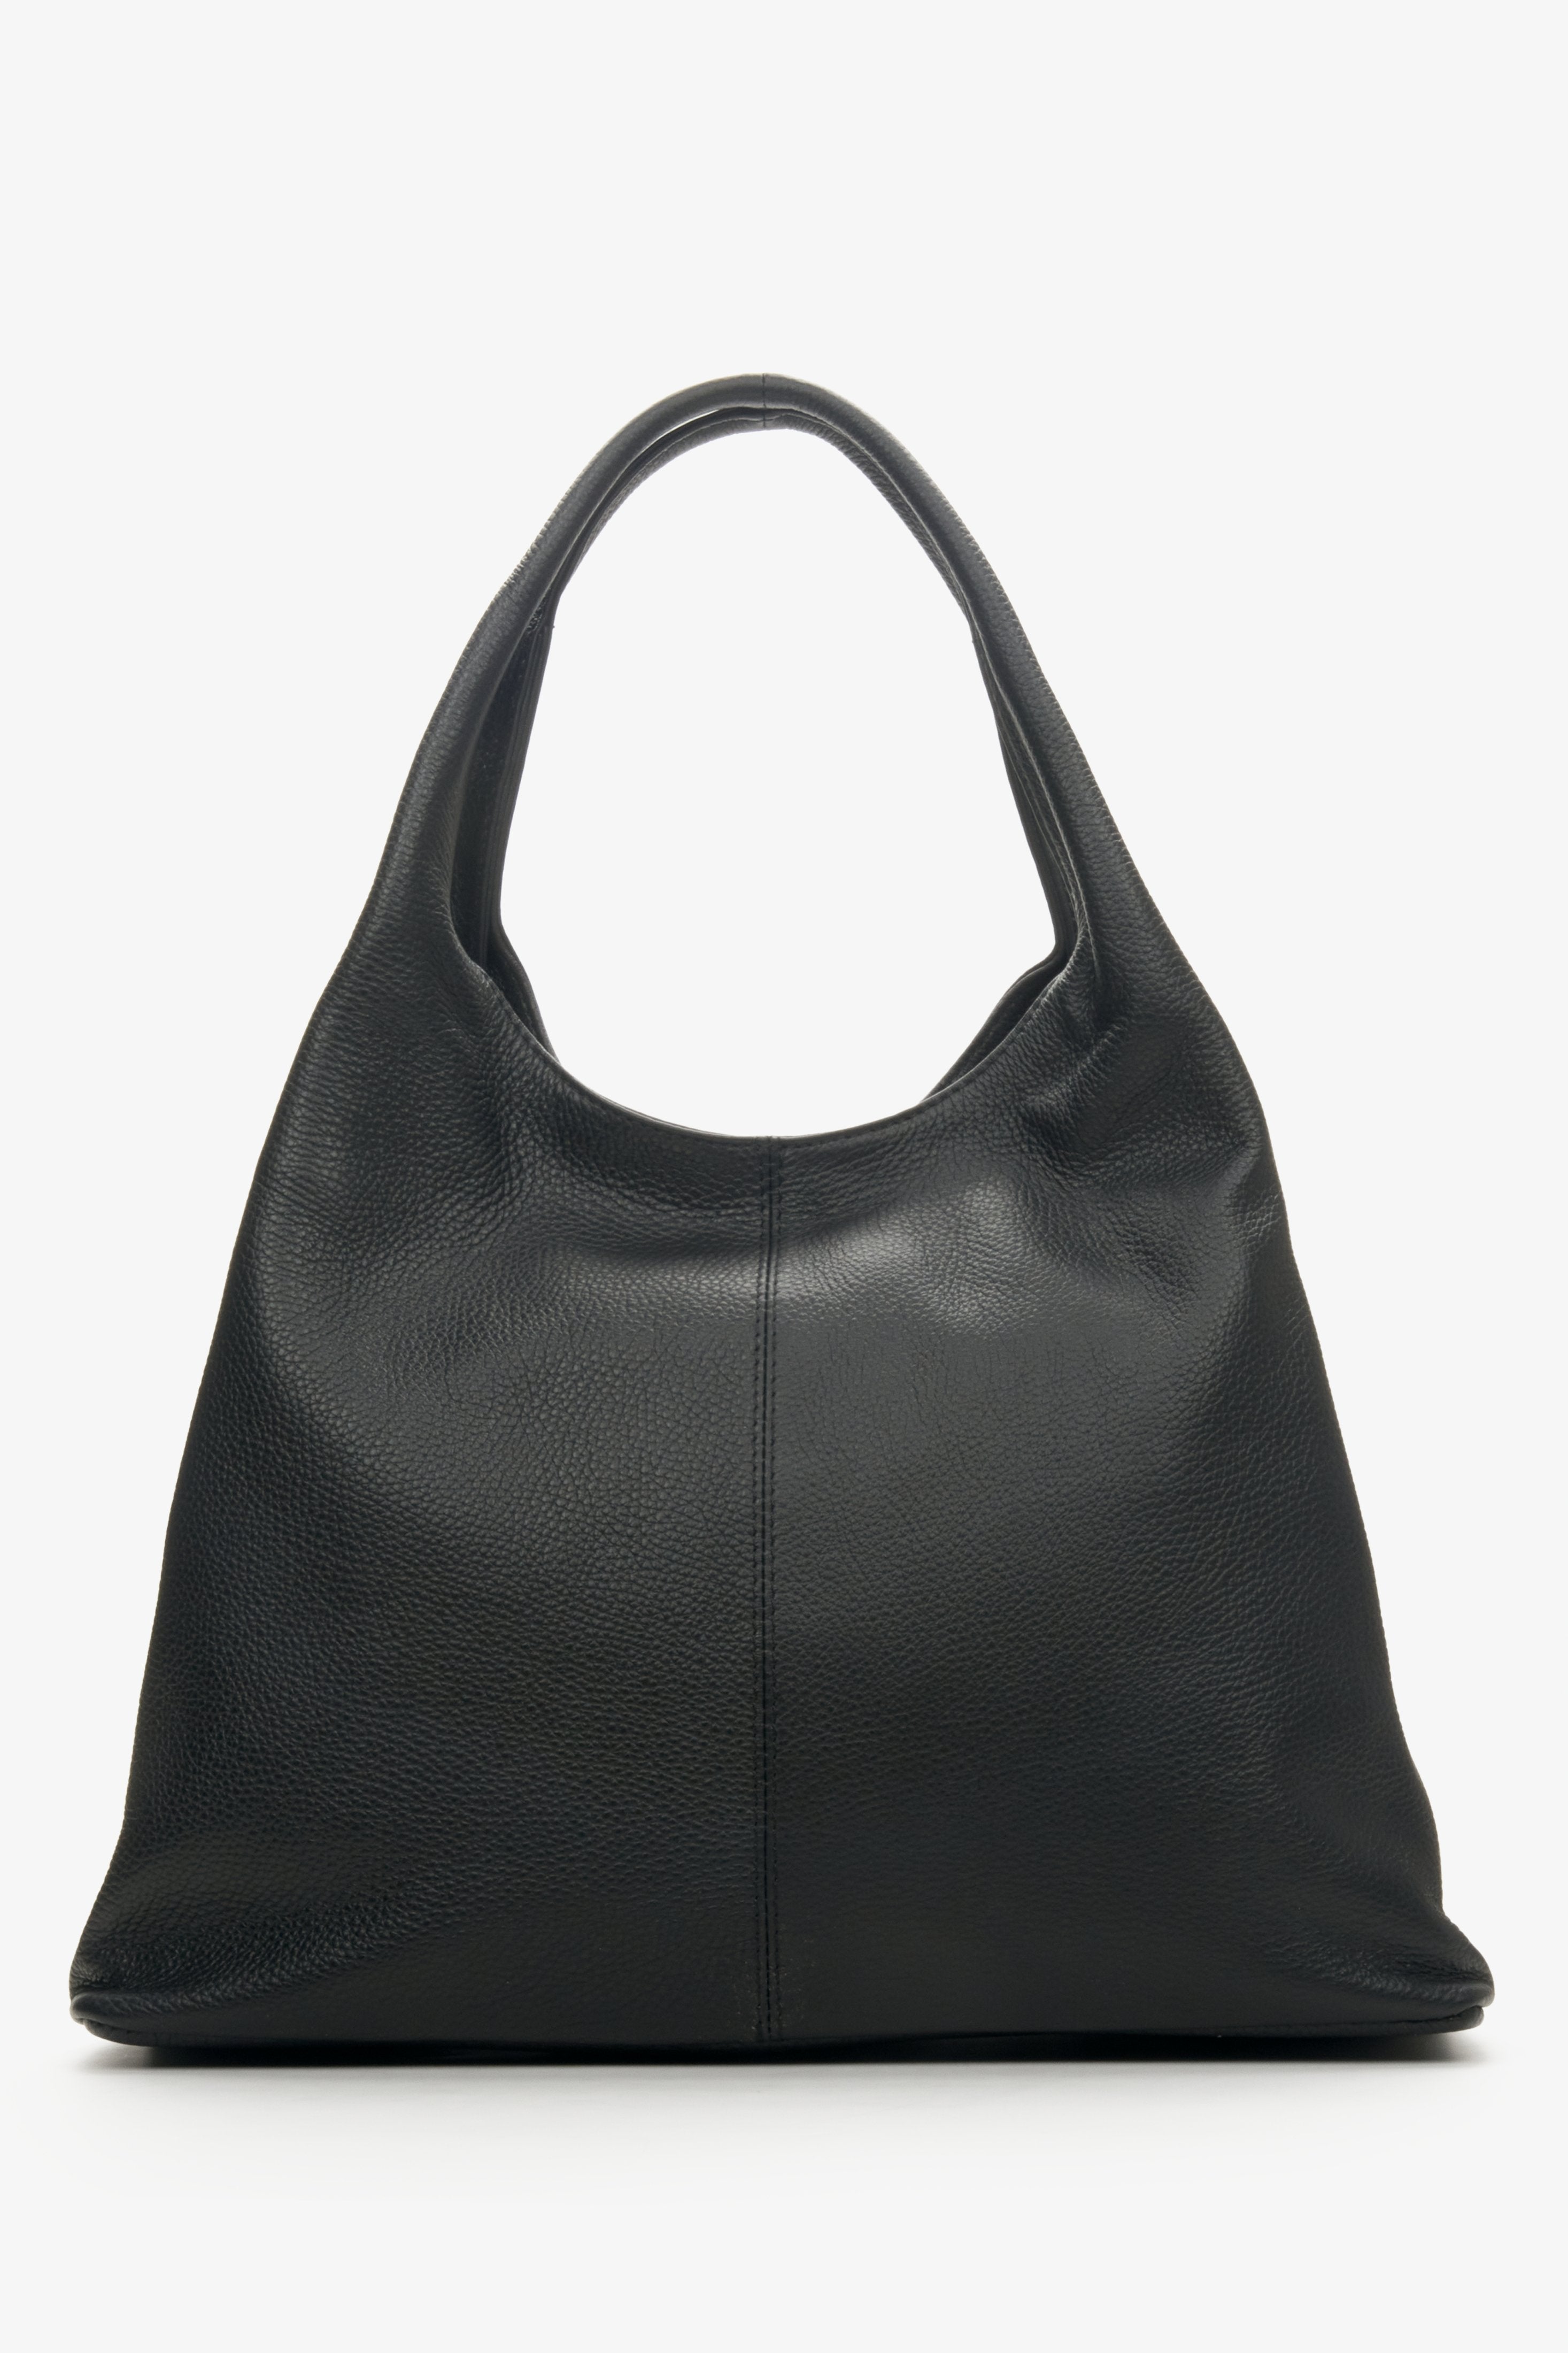 Damska, czarna torebka na ramię z włoskiej skóry naturalnej - prezentacja tyłu modelu.